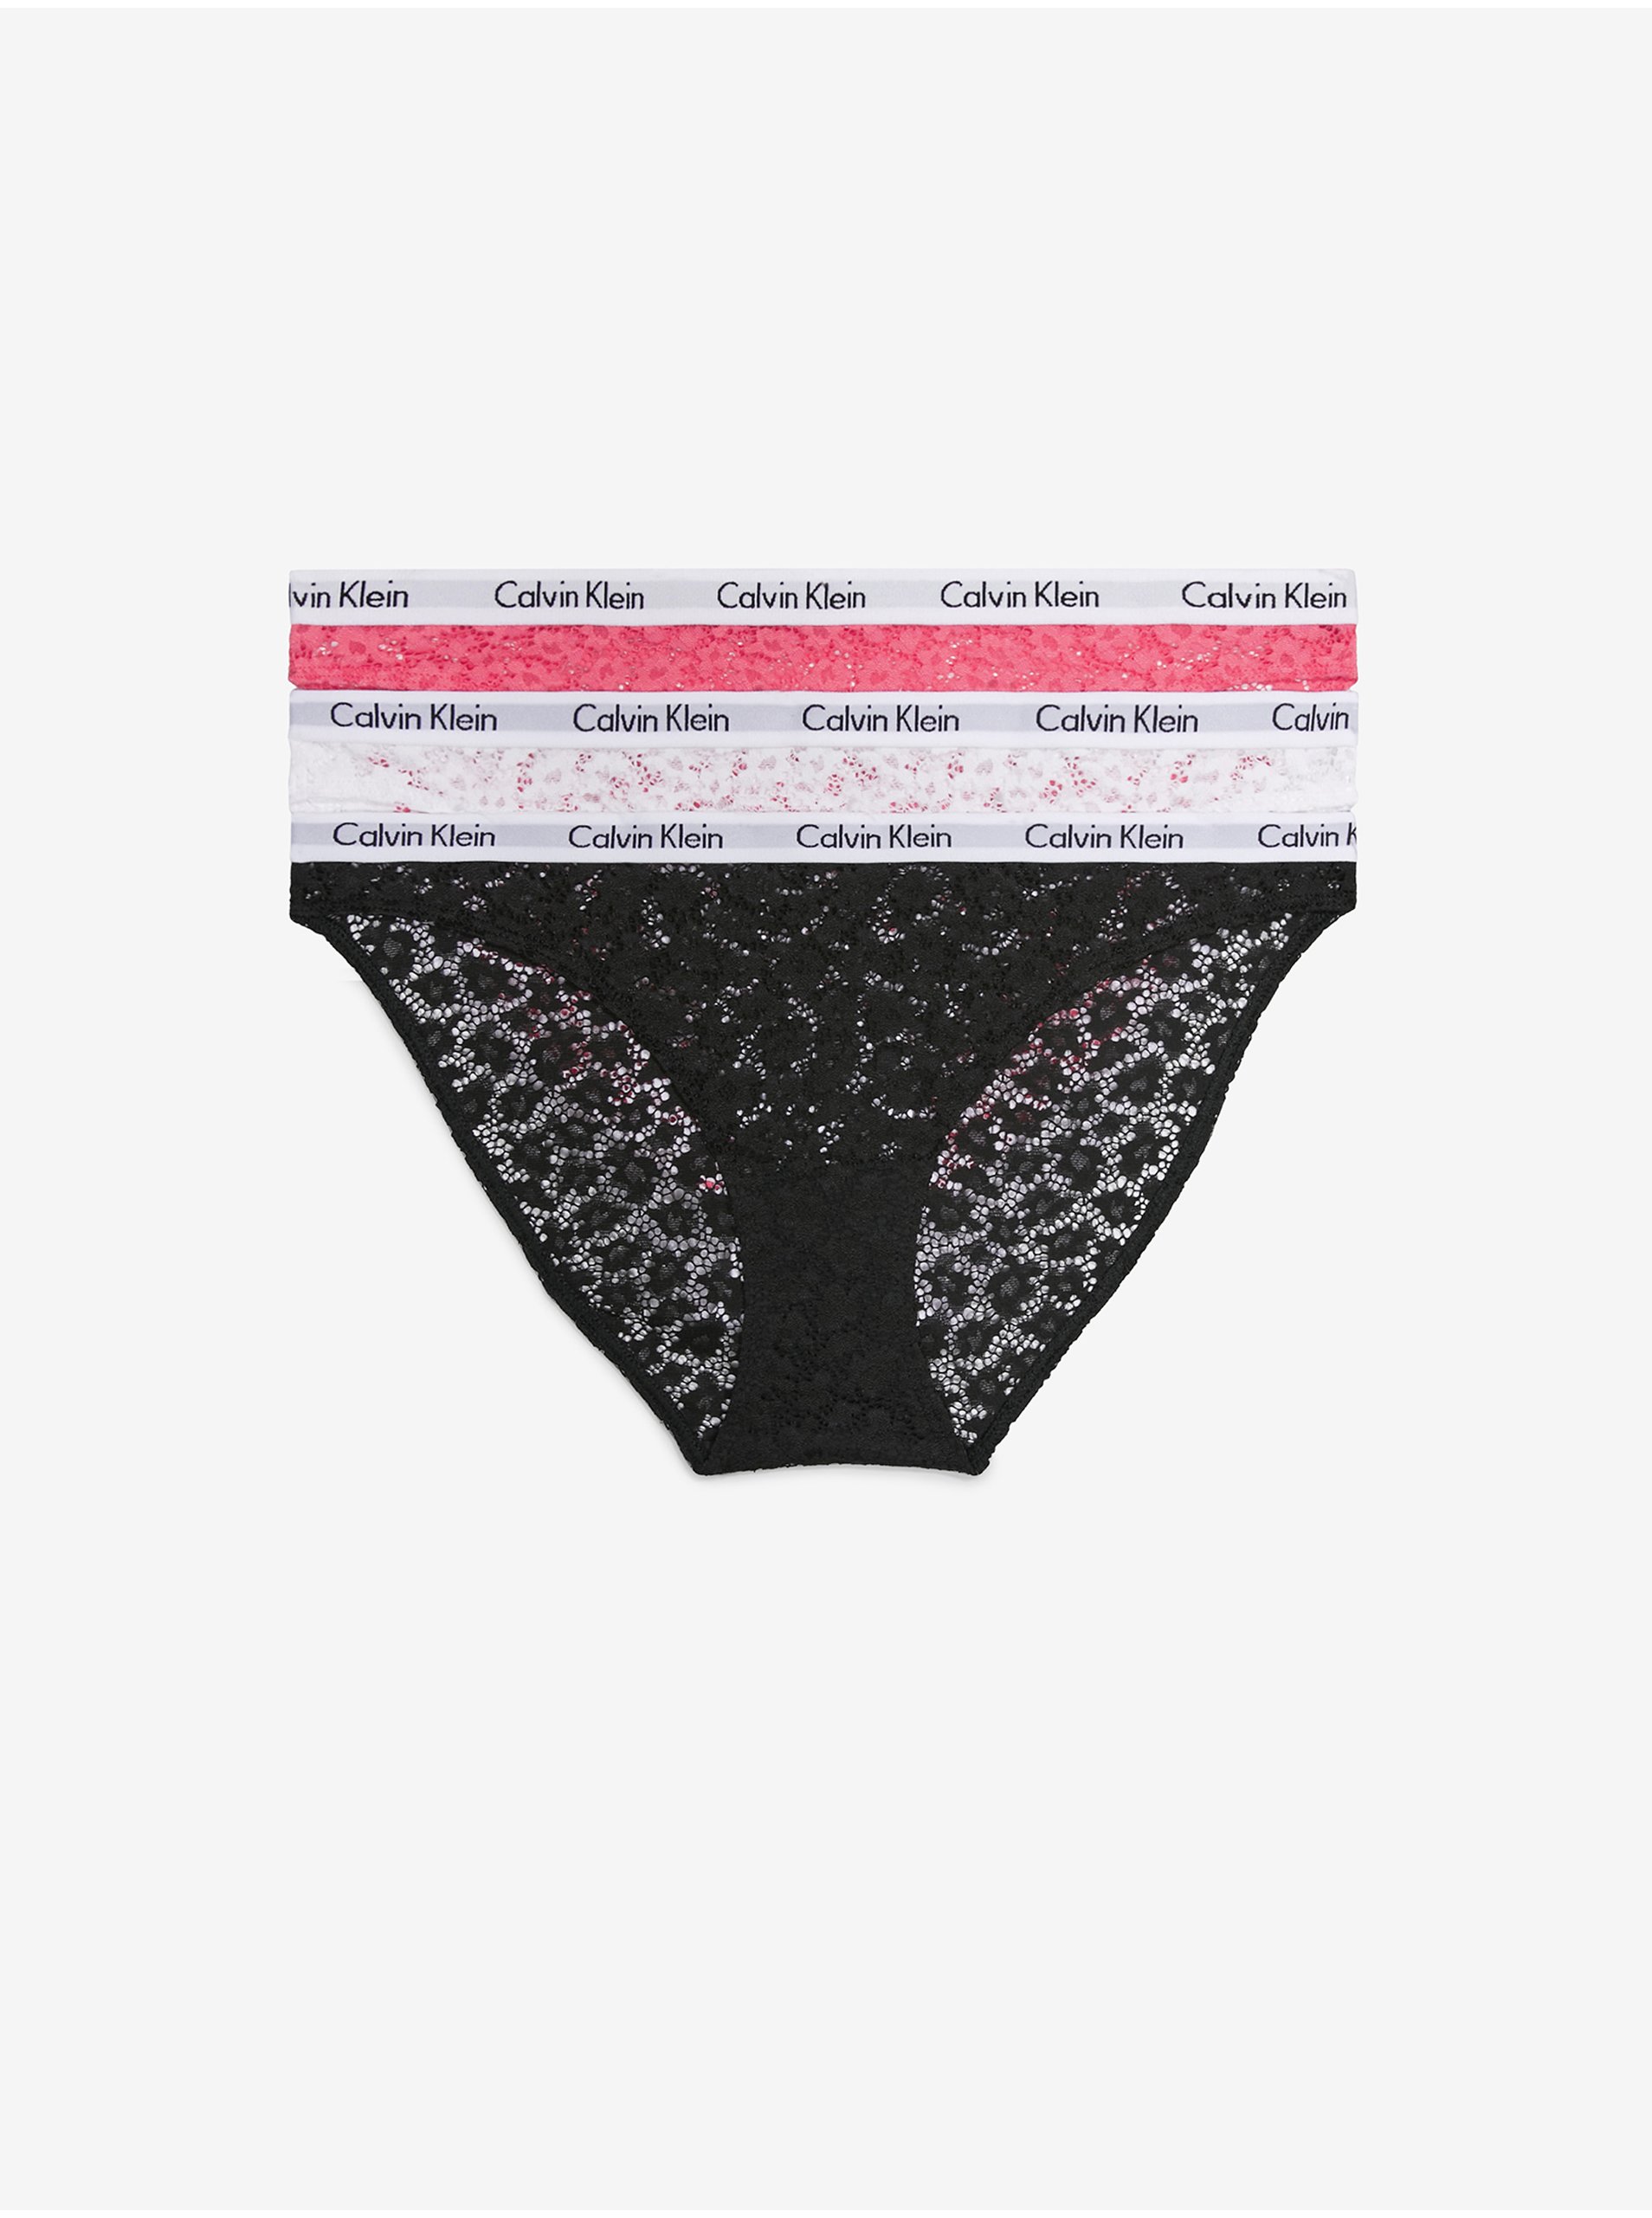 Calvin Klein Underwear Woman's Thong Brief 0000D1617ELT3